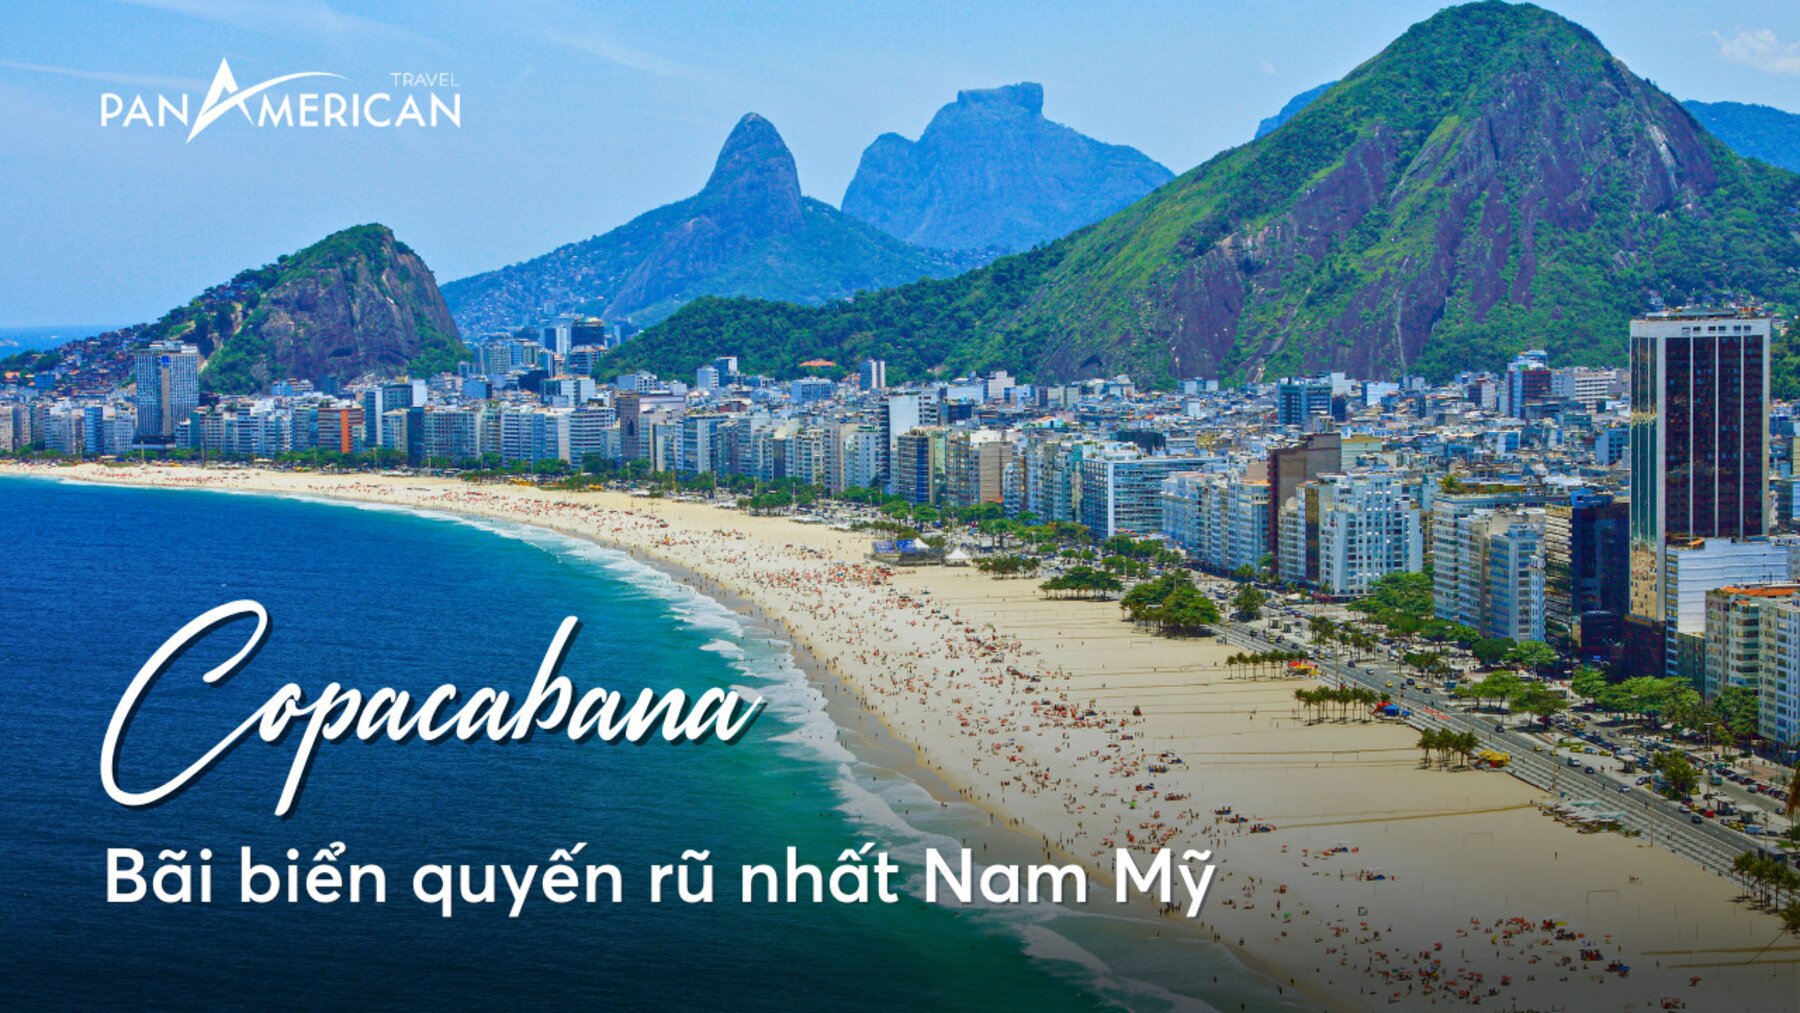 Kinh nghiệm du lịch Copacabana - bãi biển quyến rũ nhất Nam Mỹ 